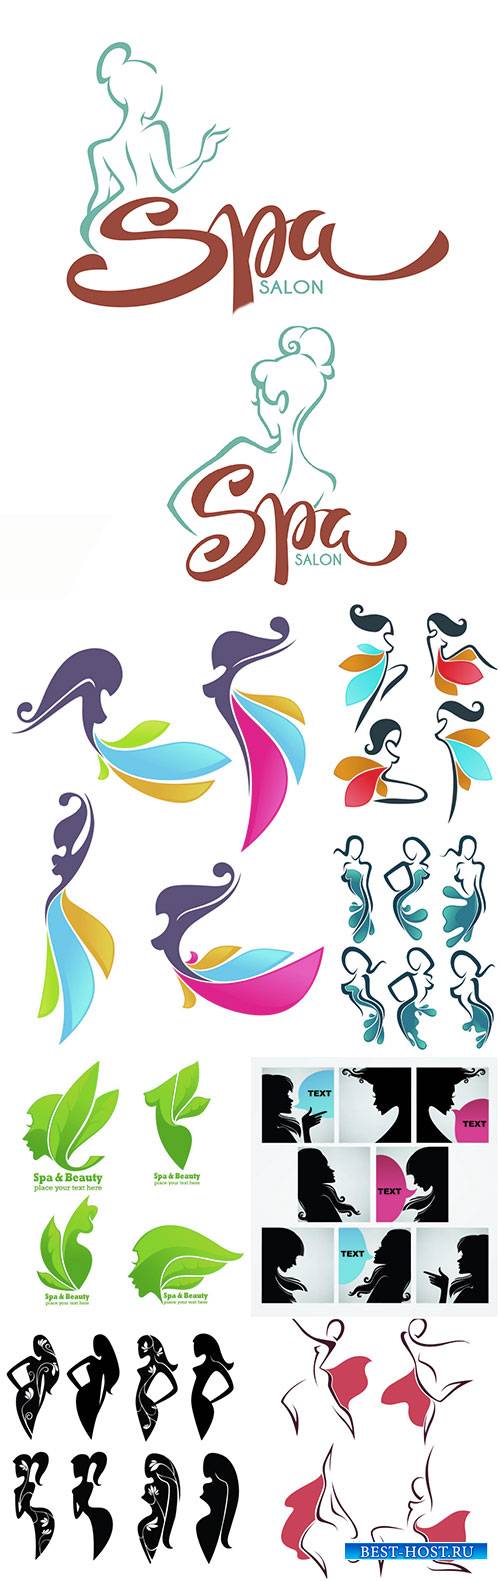 Spa salon and body care studio logo template